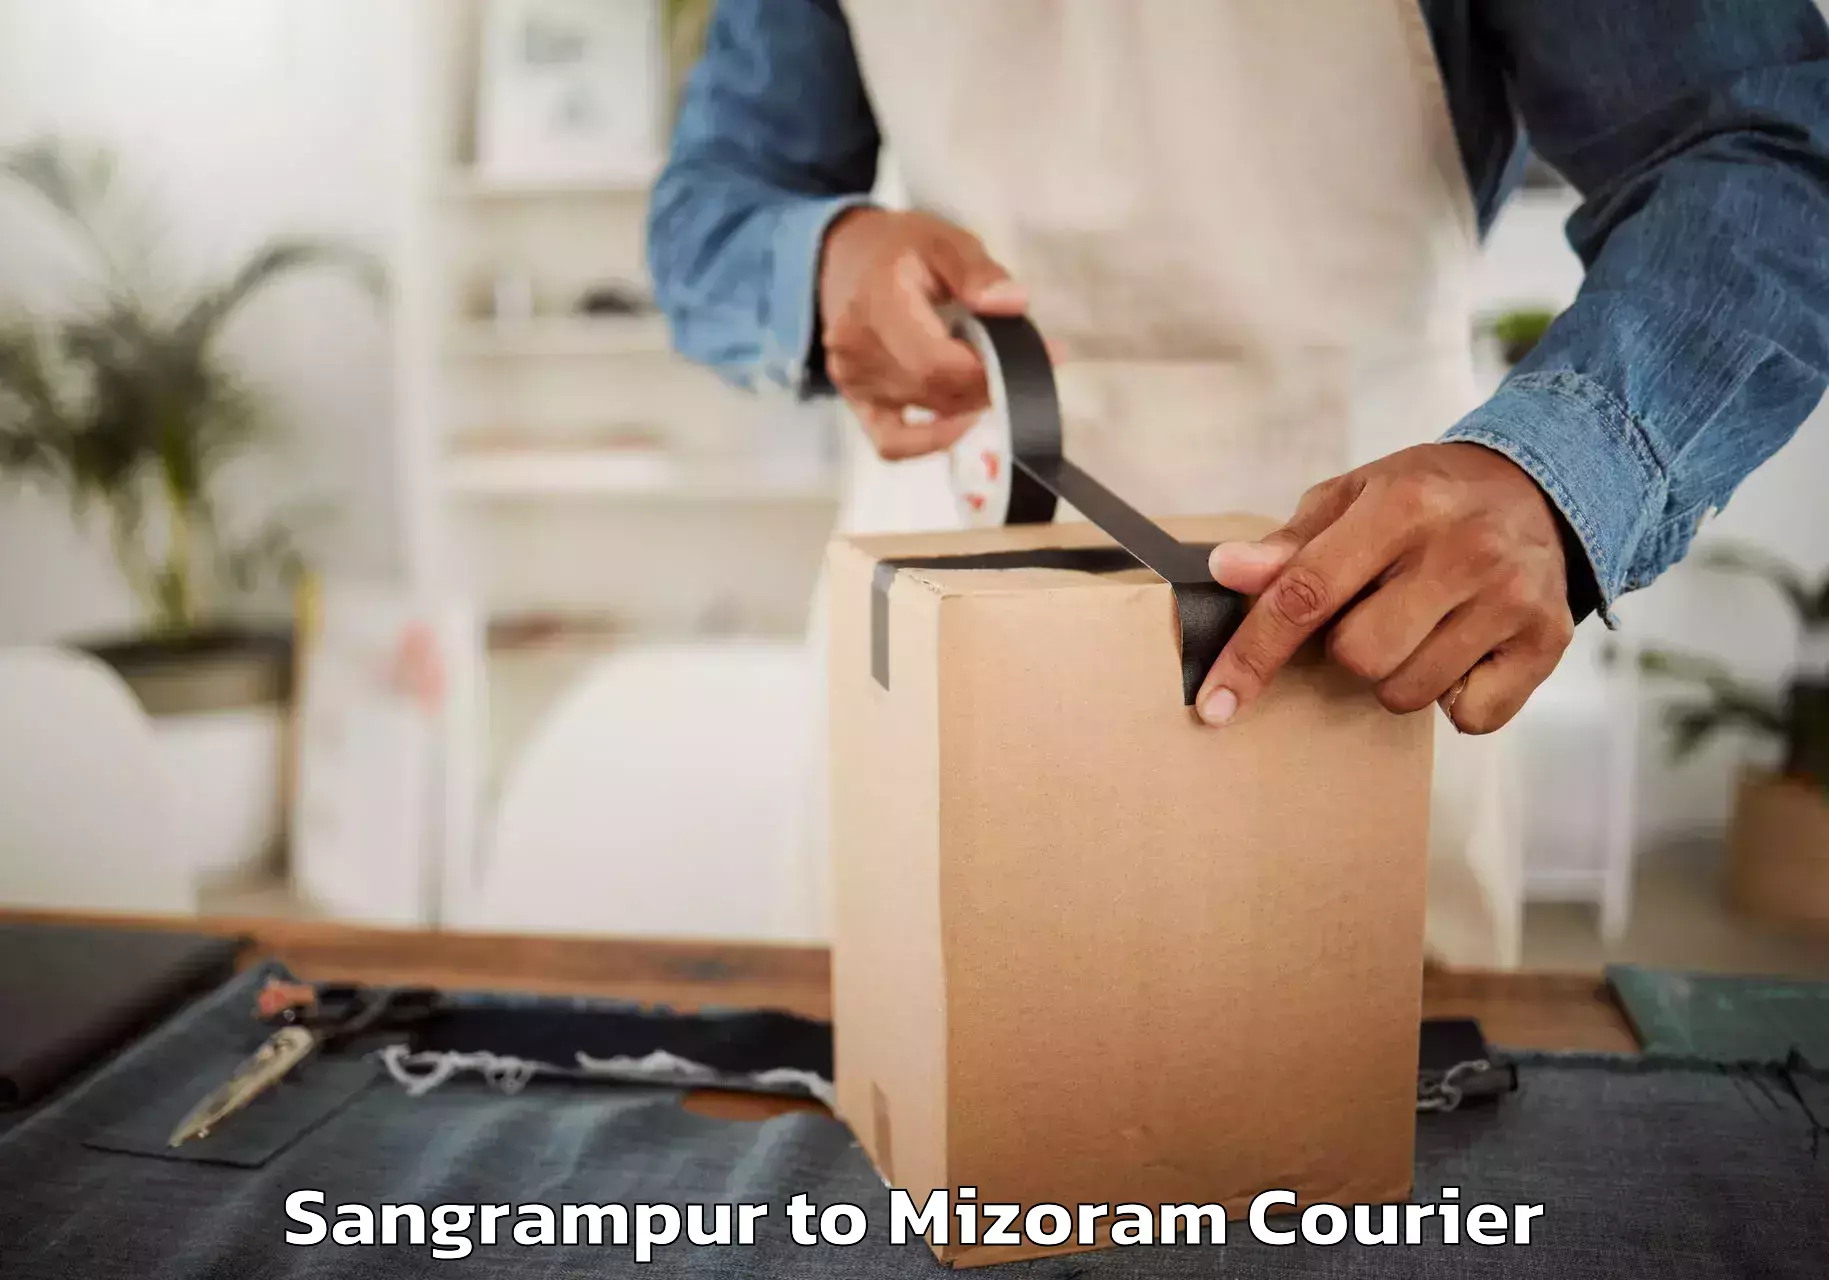 Furniture moving experts in Sangrampur to Mizoram